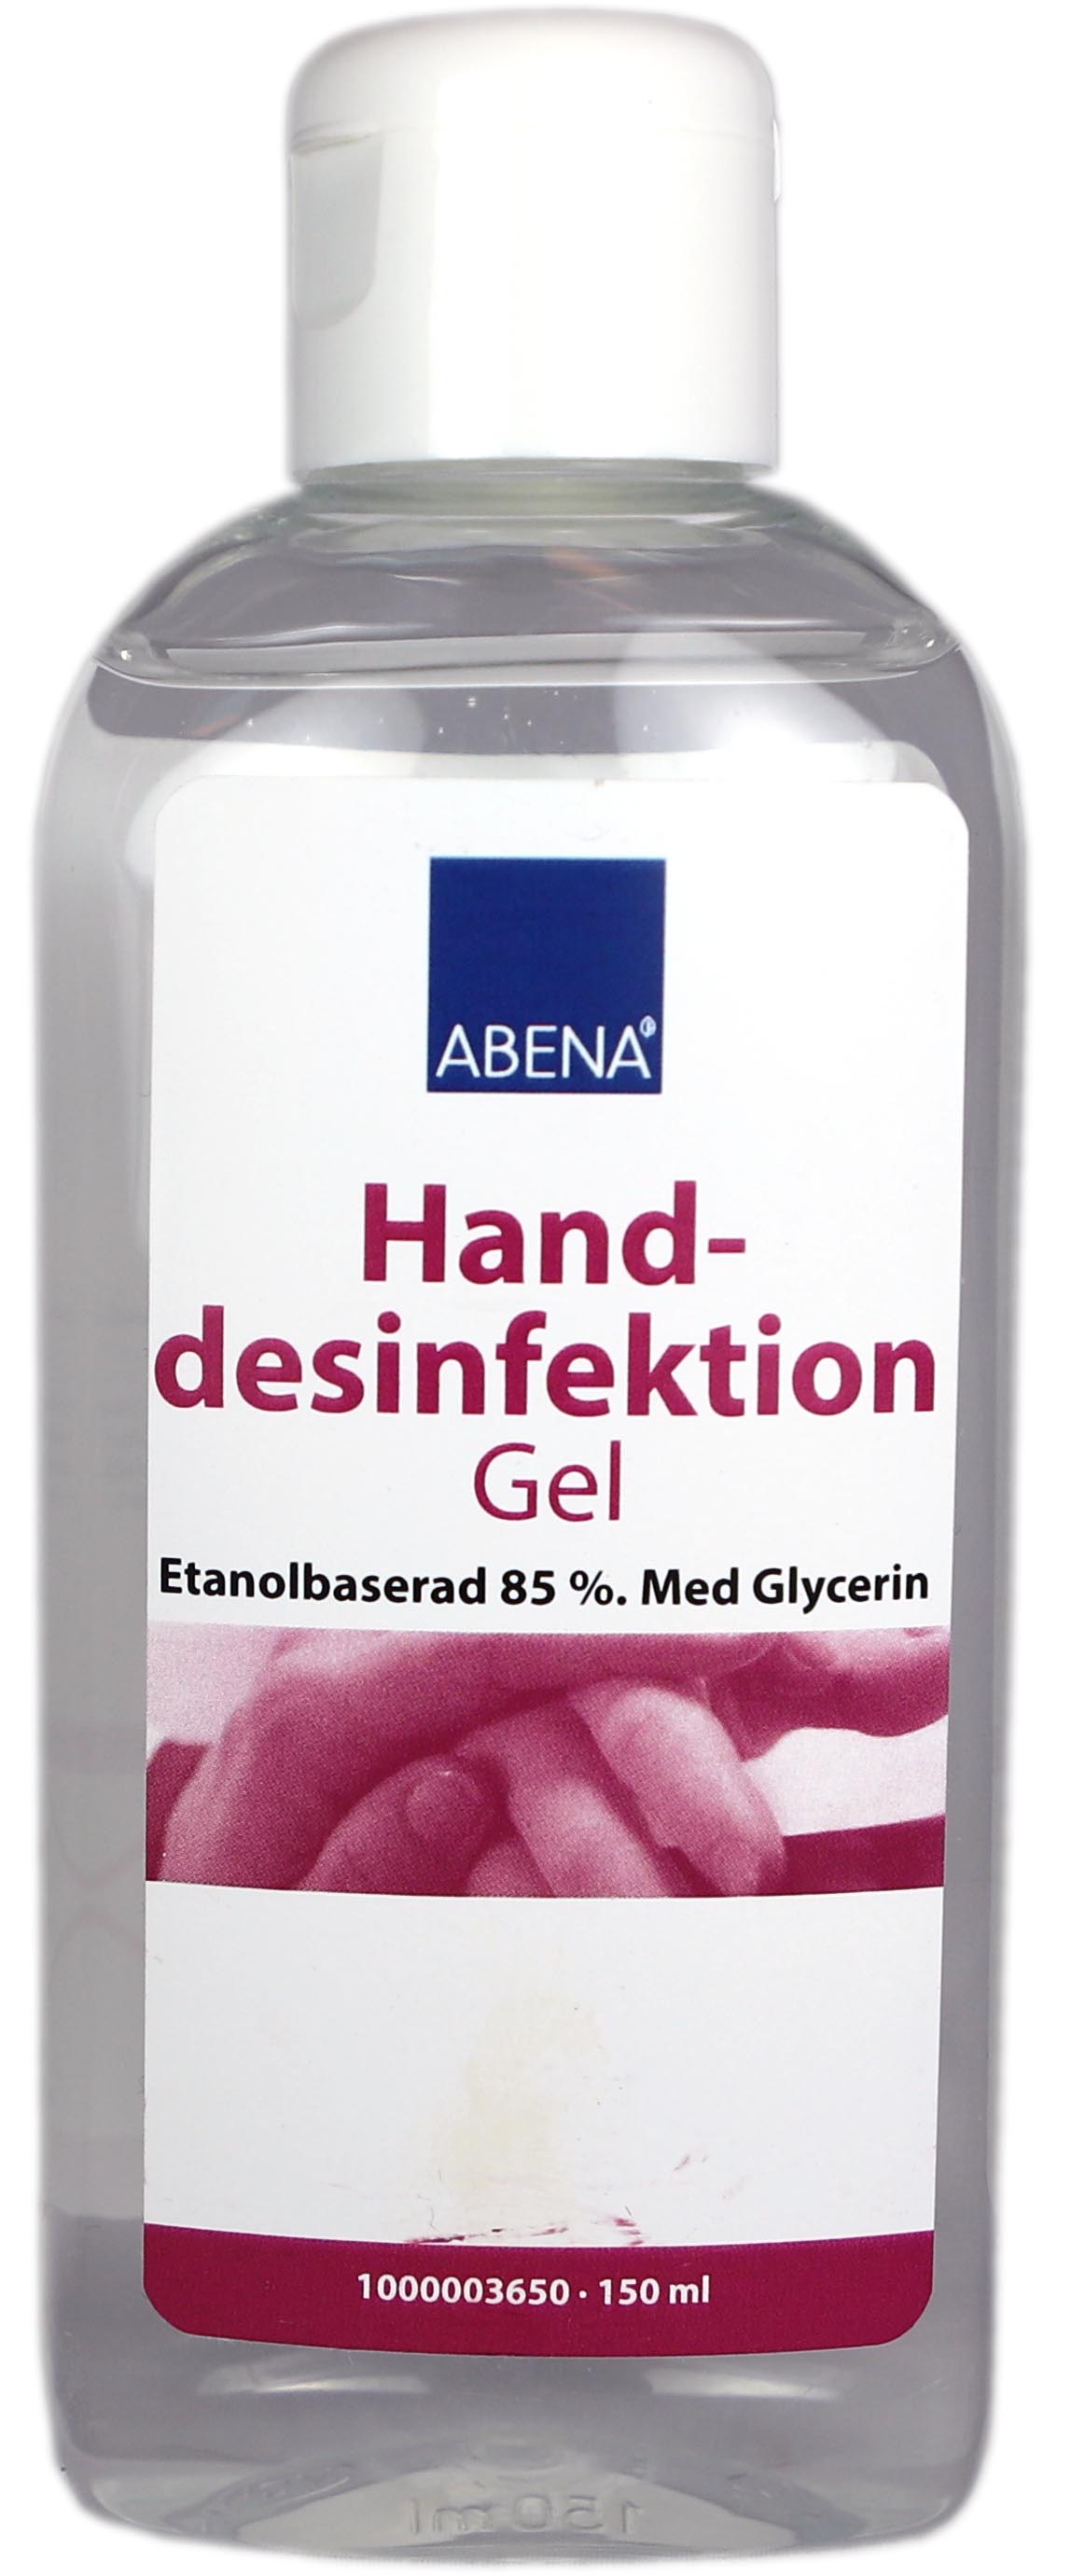 Handdesinfektion Abena gel 85% 51010162